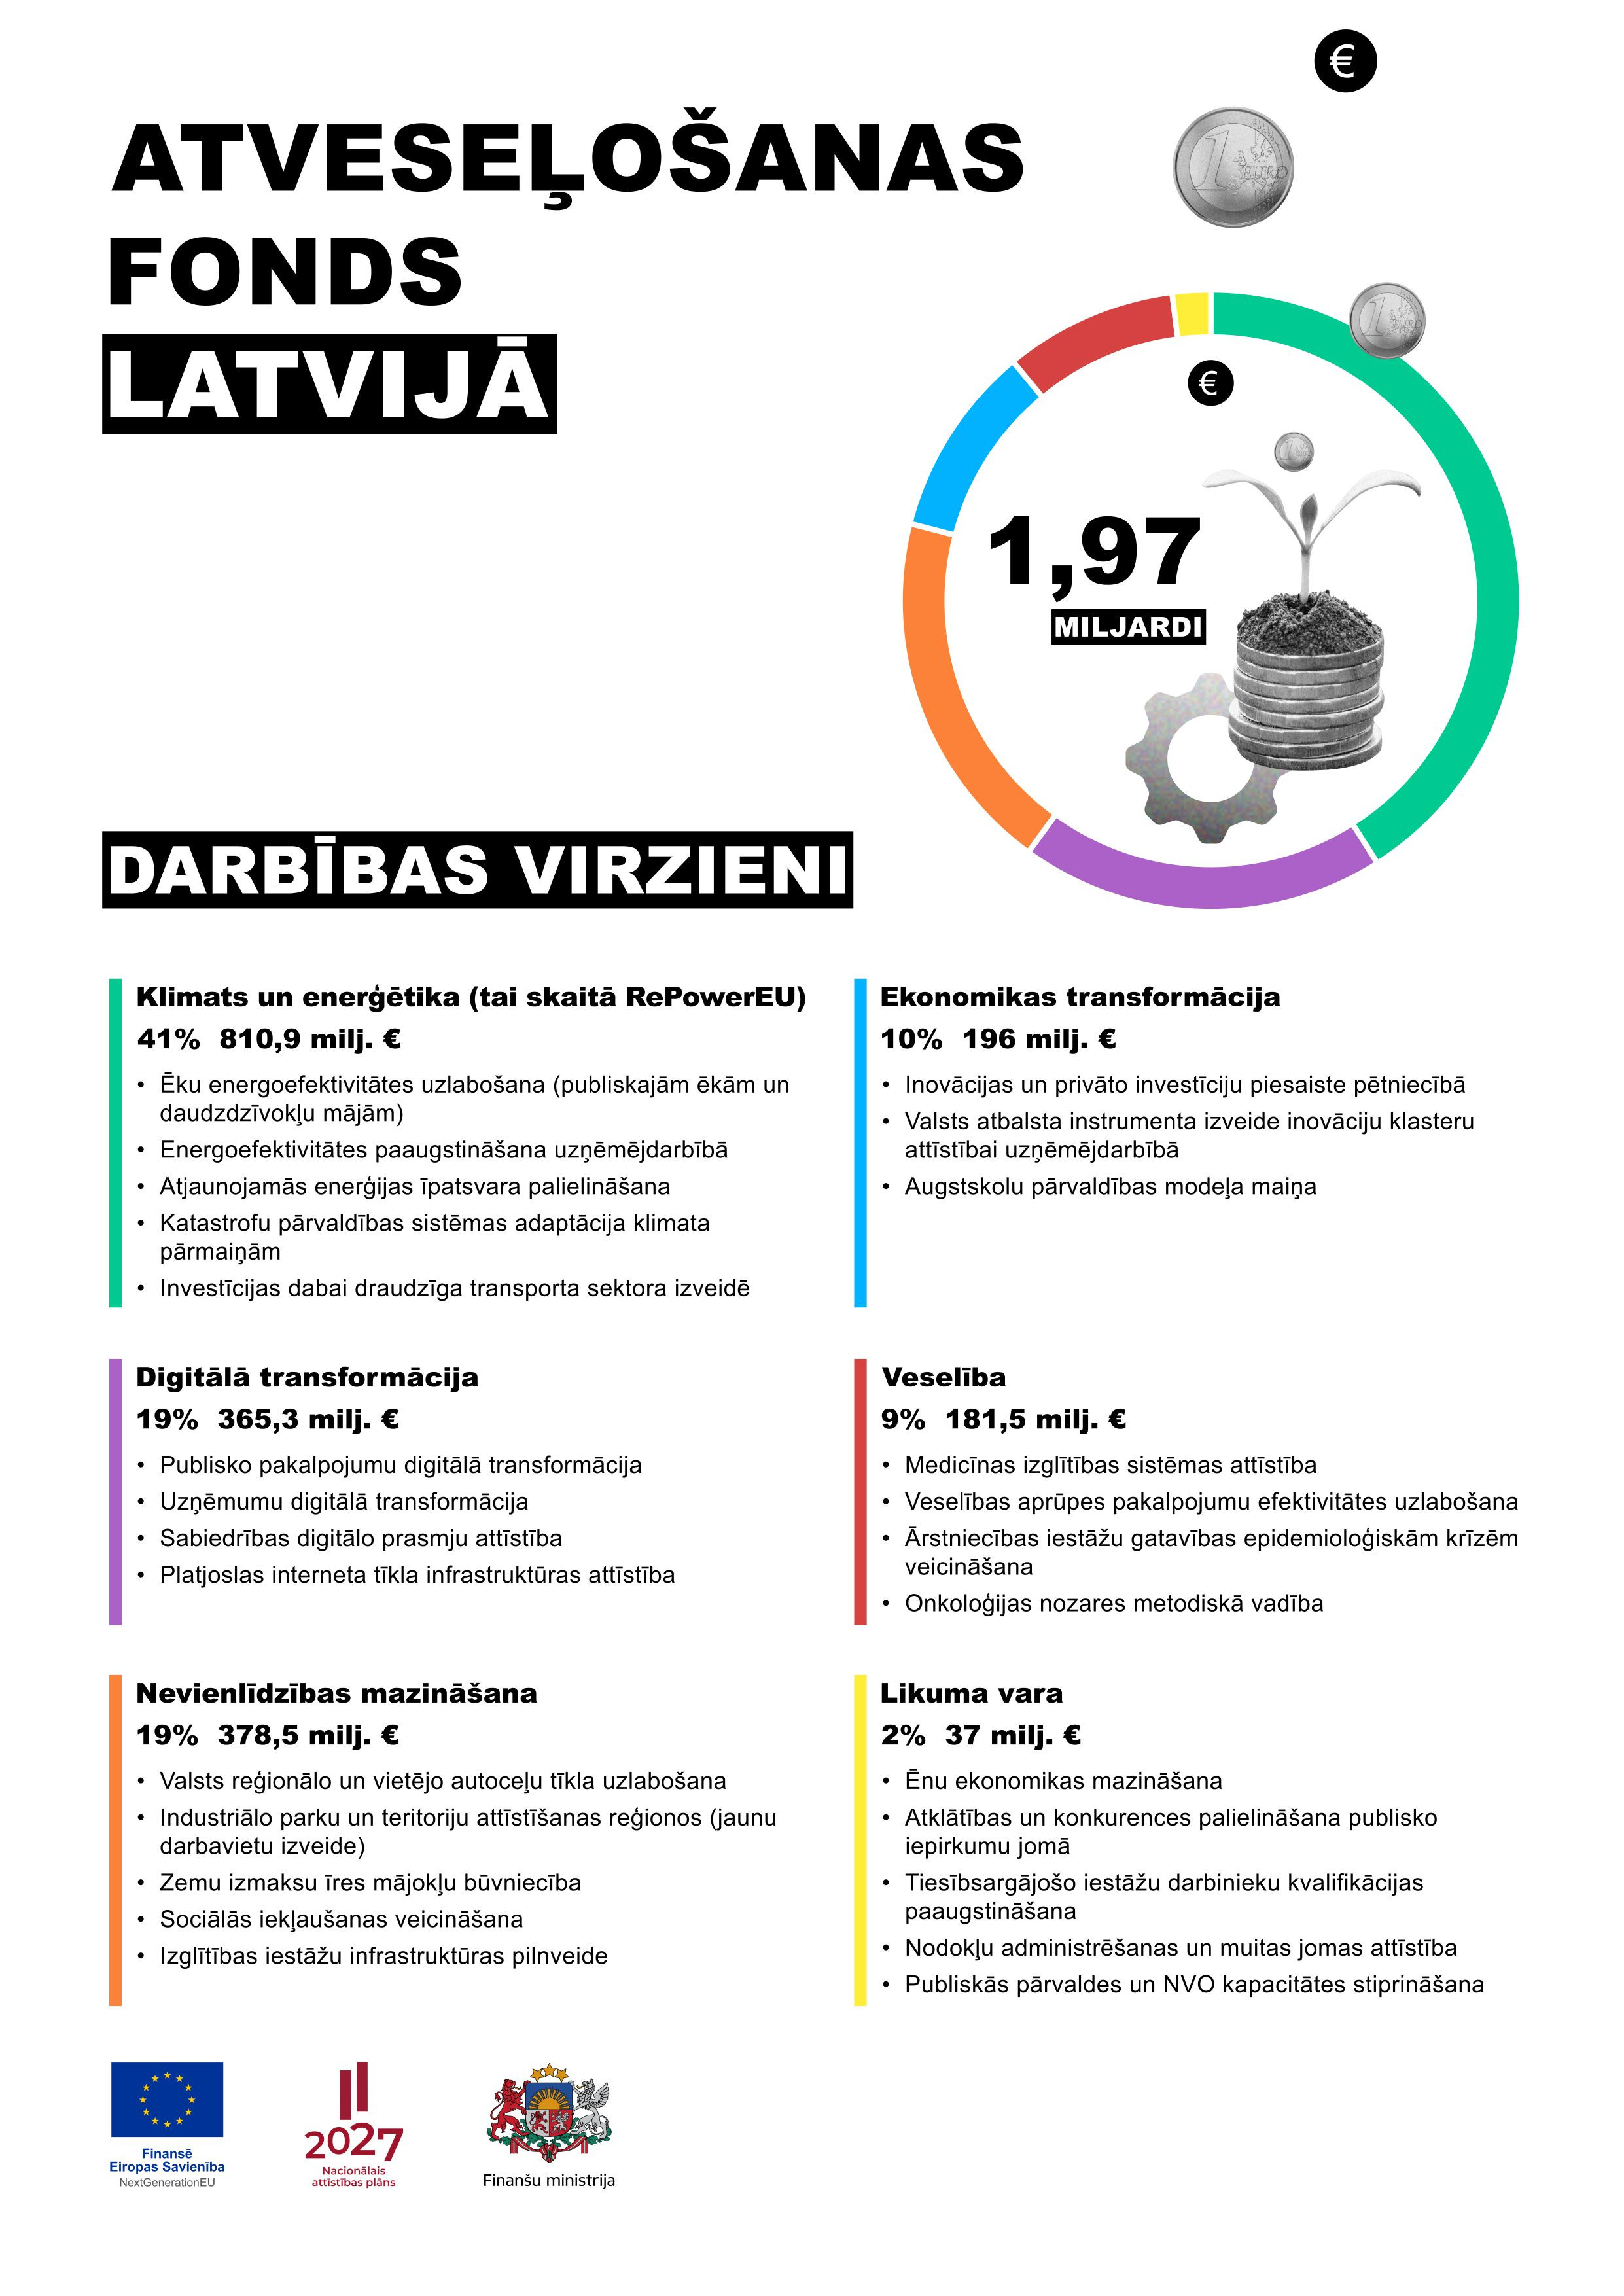 Infografika: Atveseļošanas fonds Latvijā, darbības virzieni un plānotie rezultāti